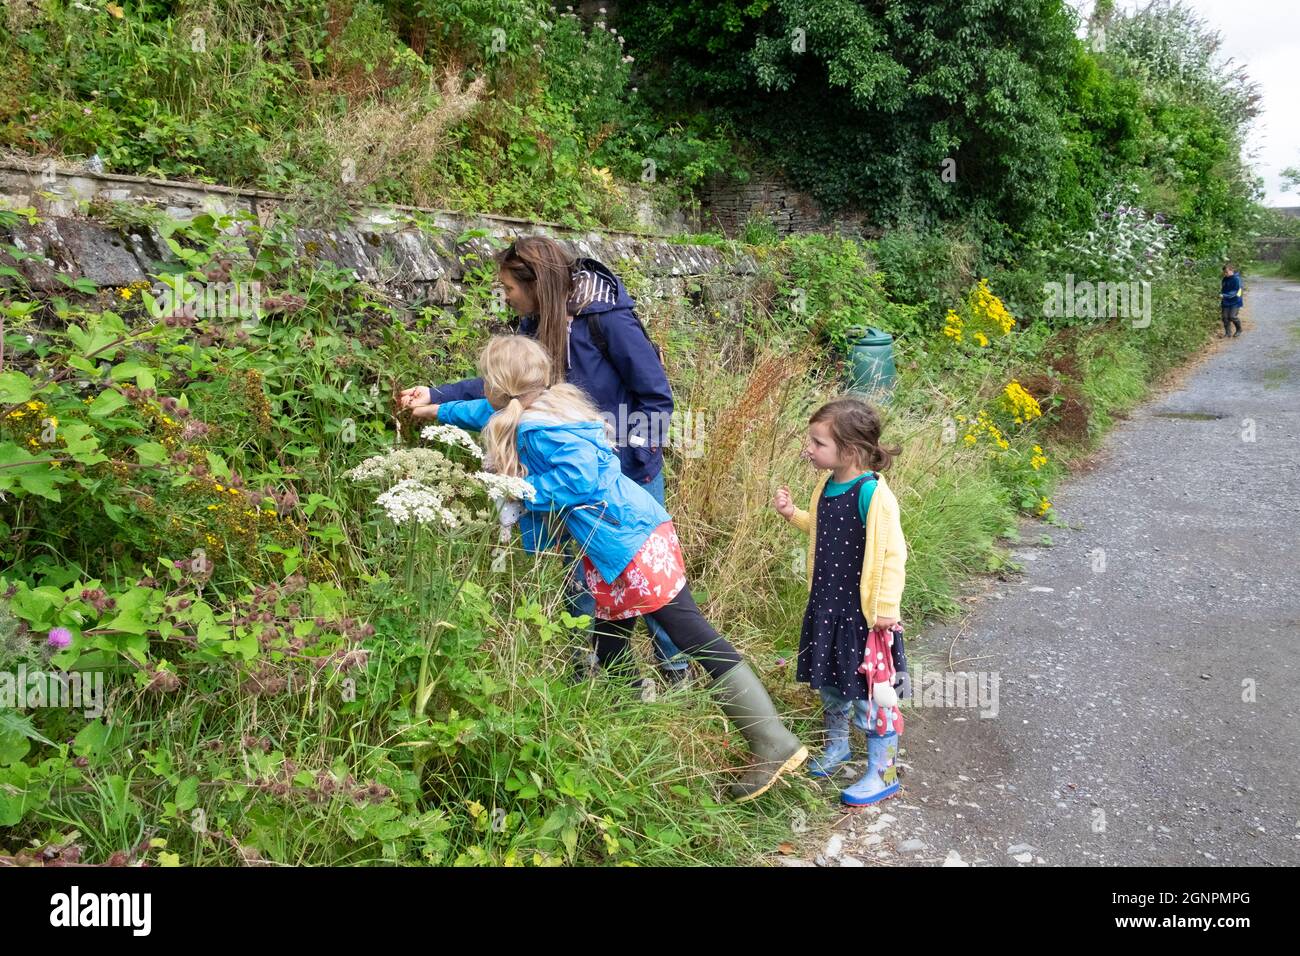 Frau und Kinder Kinder Mädchen pflücken Brombeeren auf einem Spaziergang auf der Landstraße im Sommer Llandeilo Carmarthenshire West Wales Großbritannien KATHY DEWITT Stockfoto